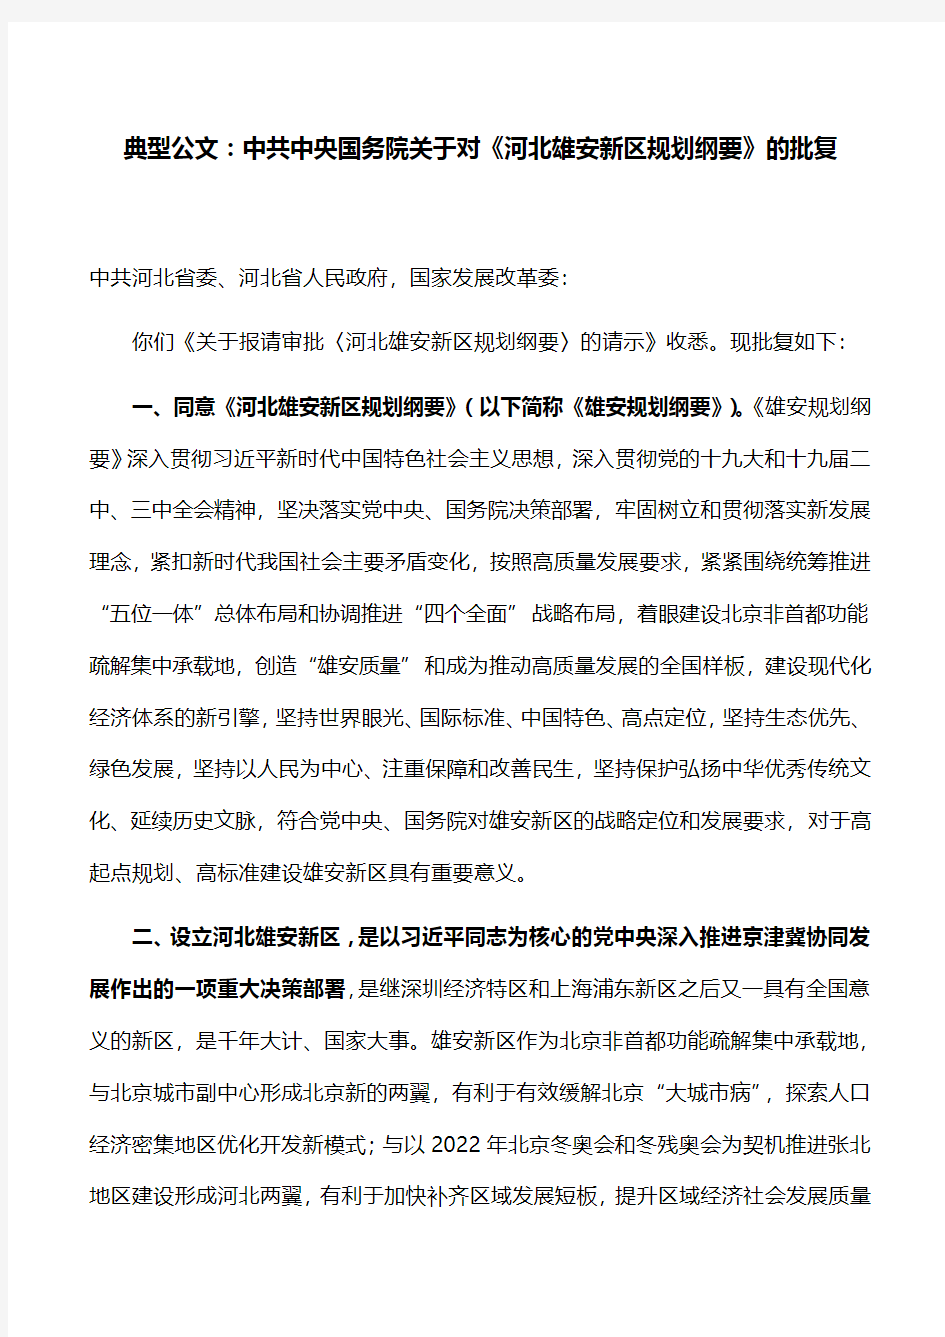 典型公文：中共中央国务院关于对《河北雄安新区规划纲要》的批复